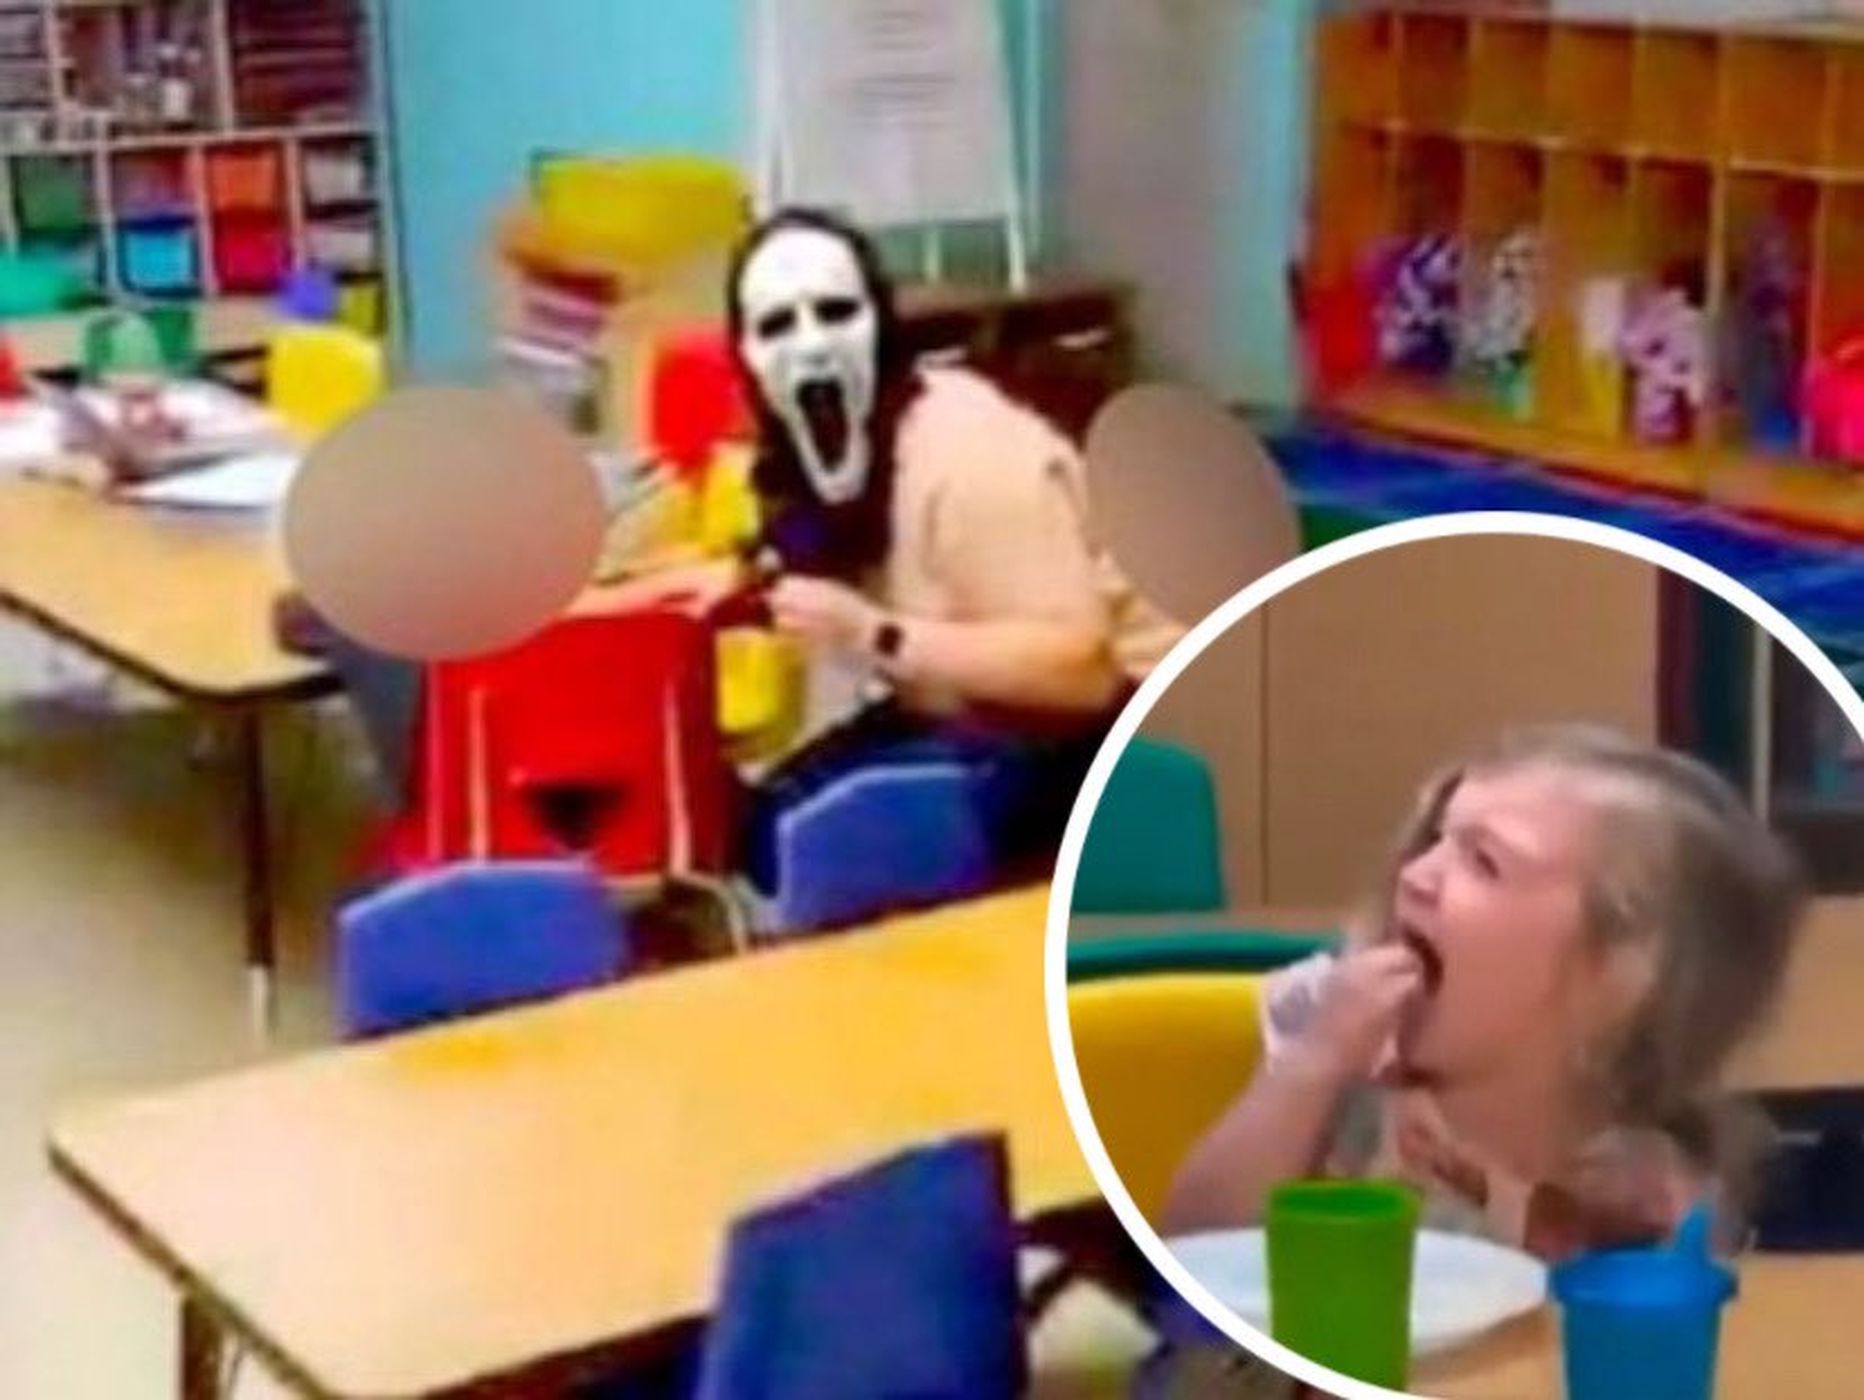 Сотрудница детского сада Lil' Blessings в Гамильтоне напугала детей маской из фильма ужасов «Крик» 1990-х годов.